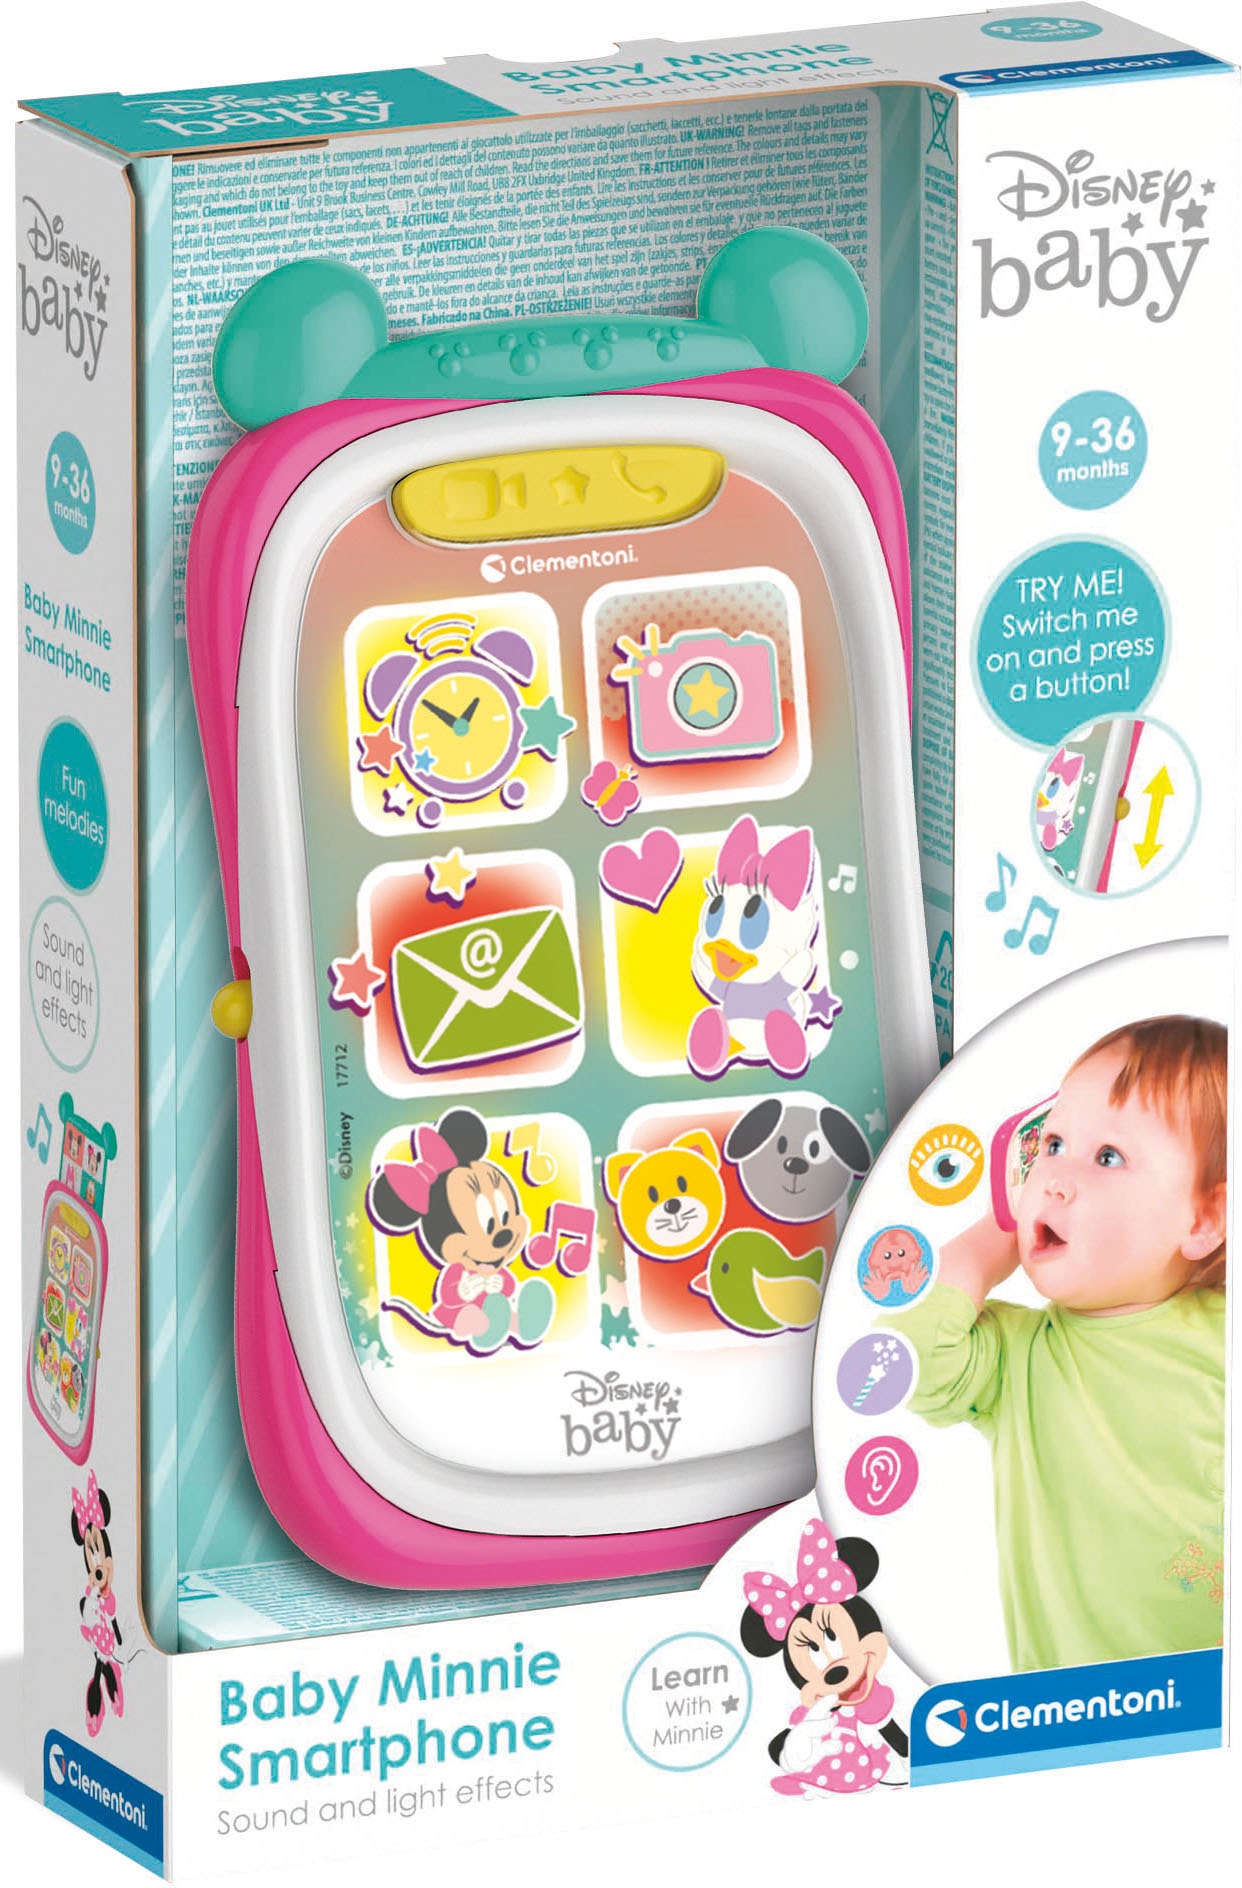 »Baby und mit Clementoni, Clementoni® bei Soundeffekten Licht- Spiel-Smartphone Minnie«,